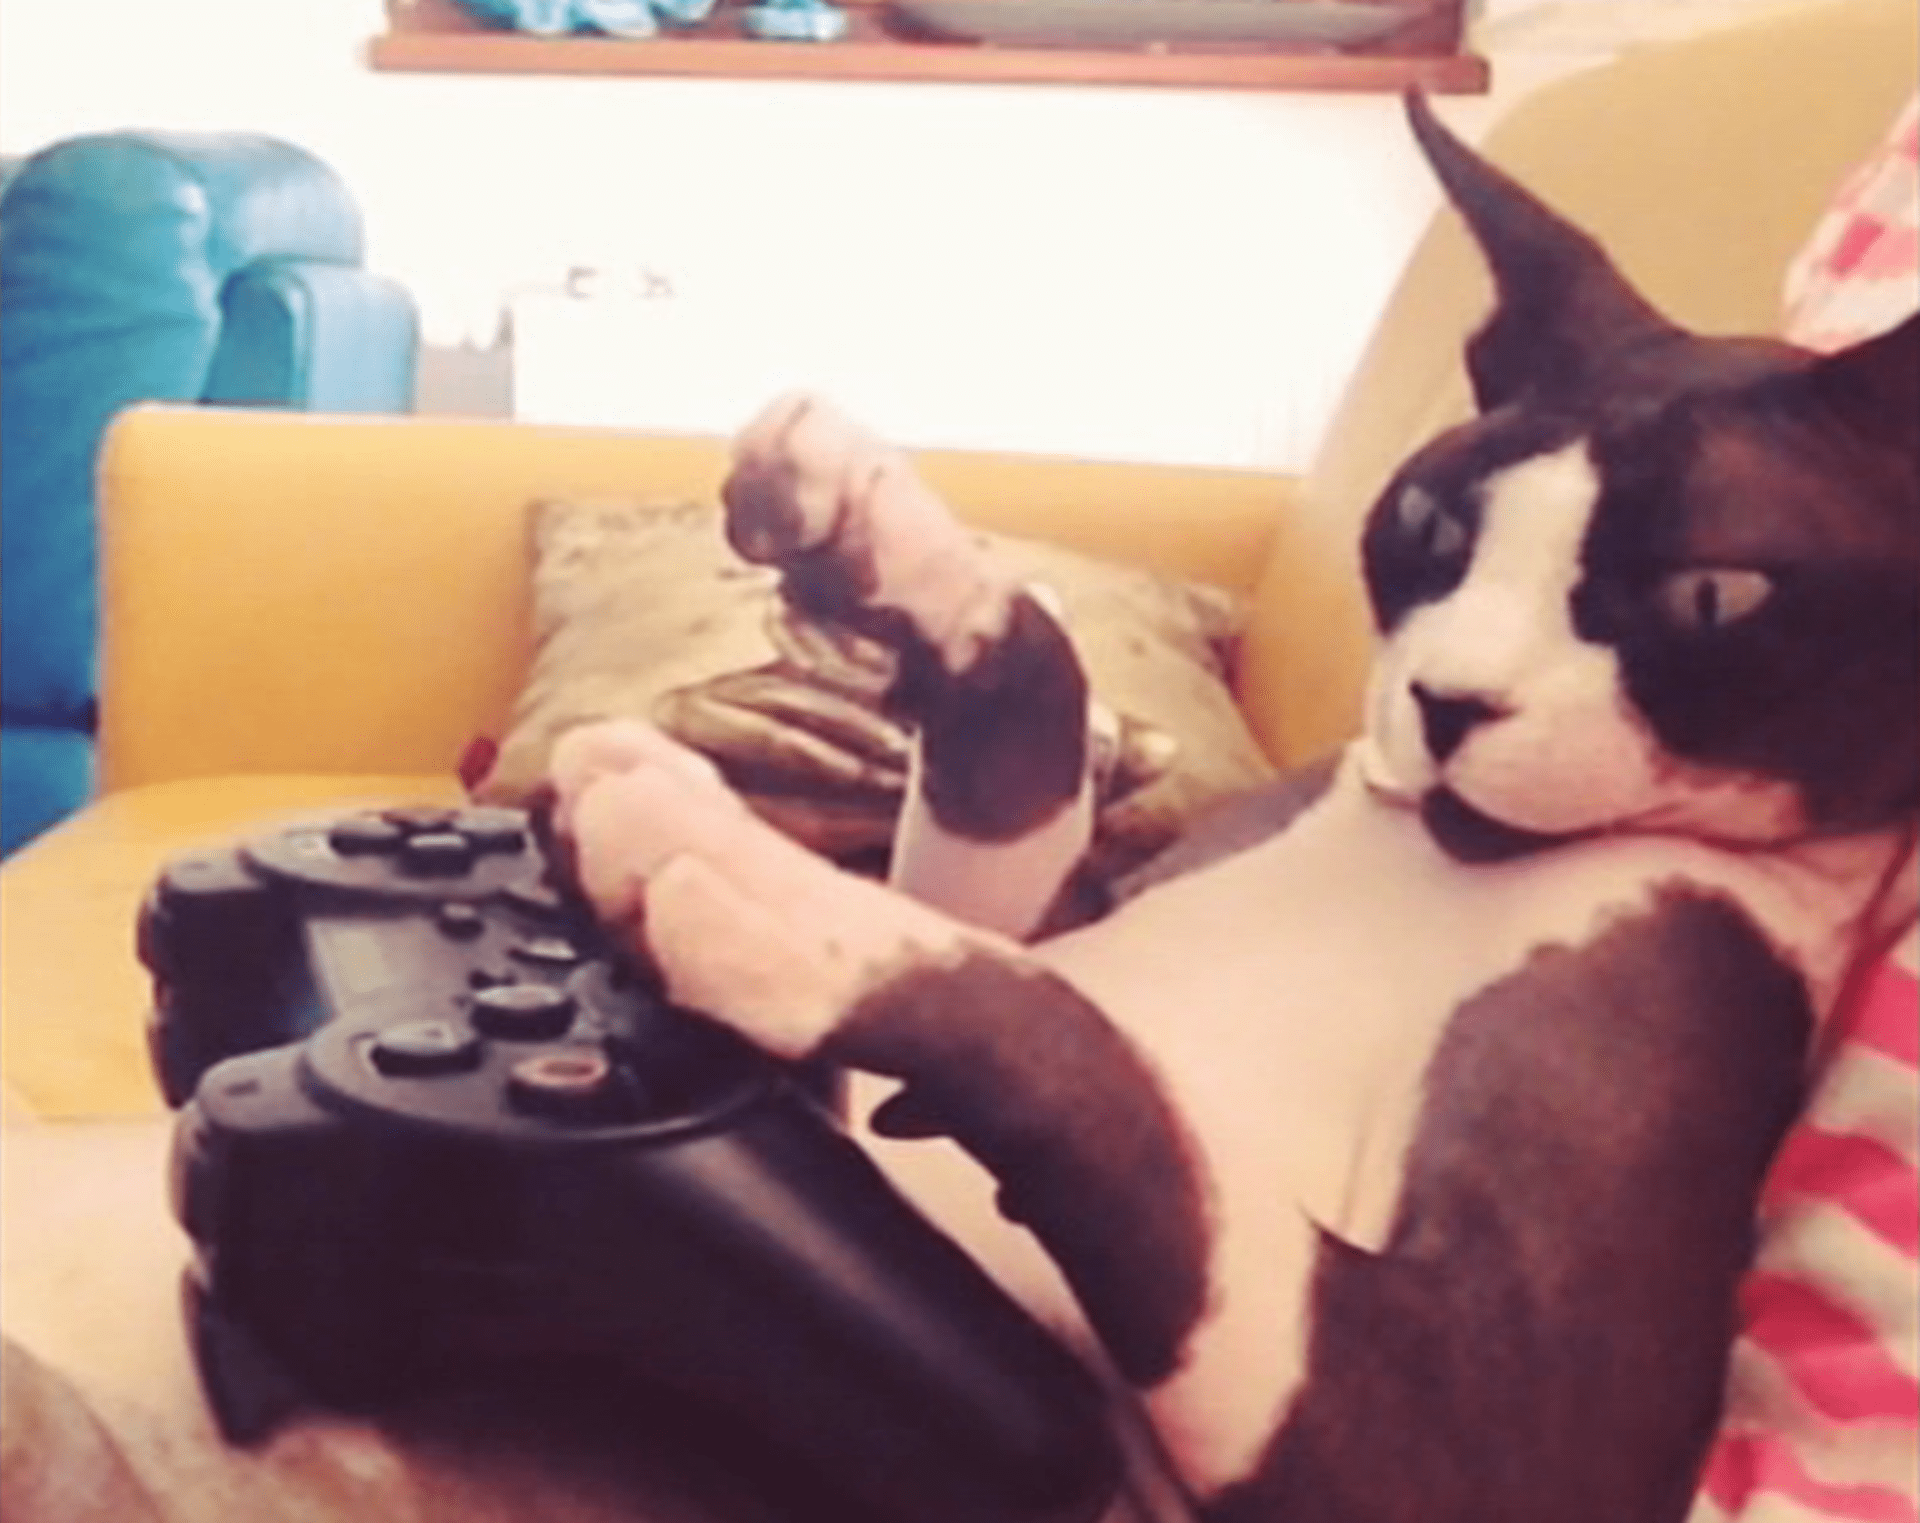 video Divácké zprávy: Tak tomu neuvěříte - kočka hraje videohry!